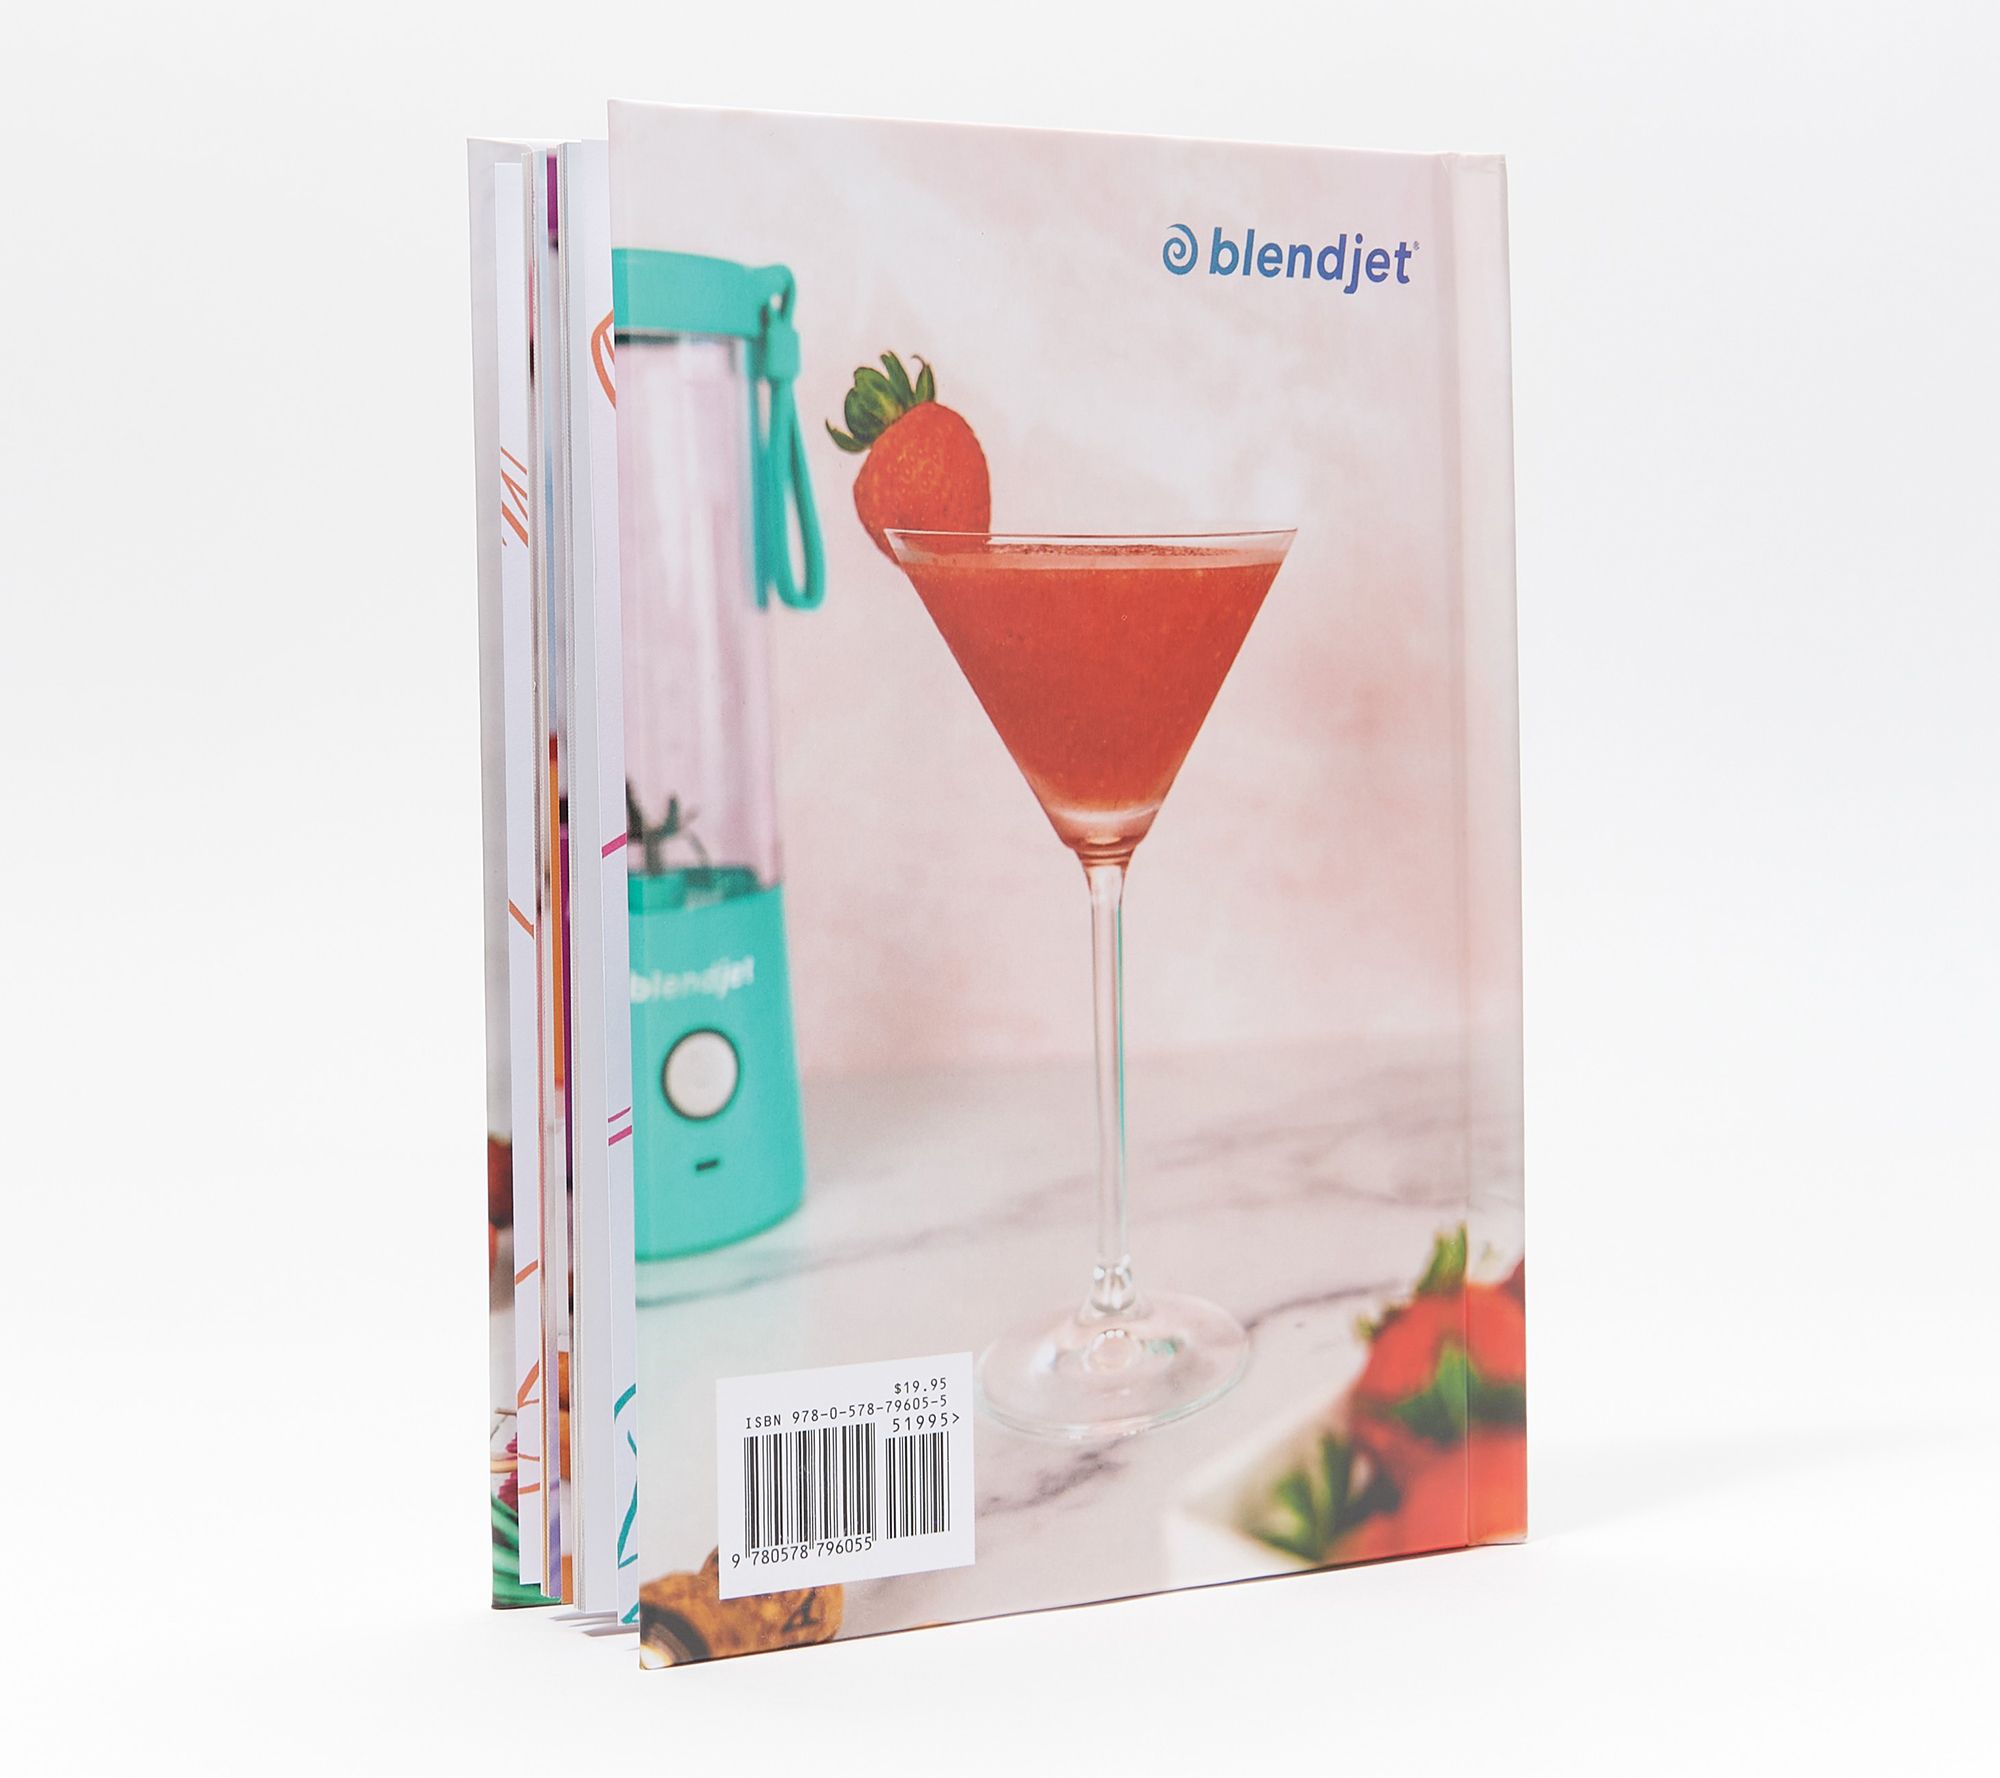 blendjet recipe book pdf free download